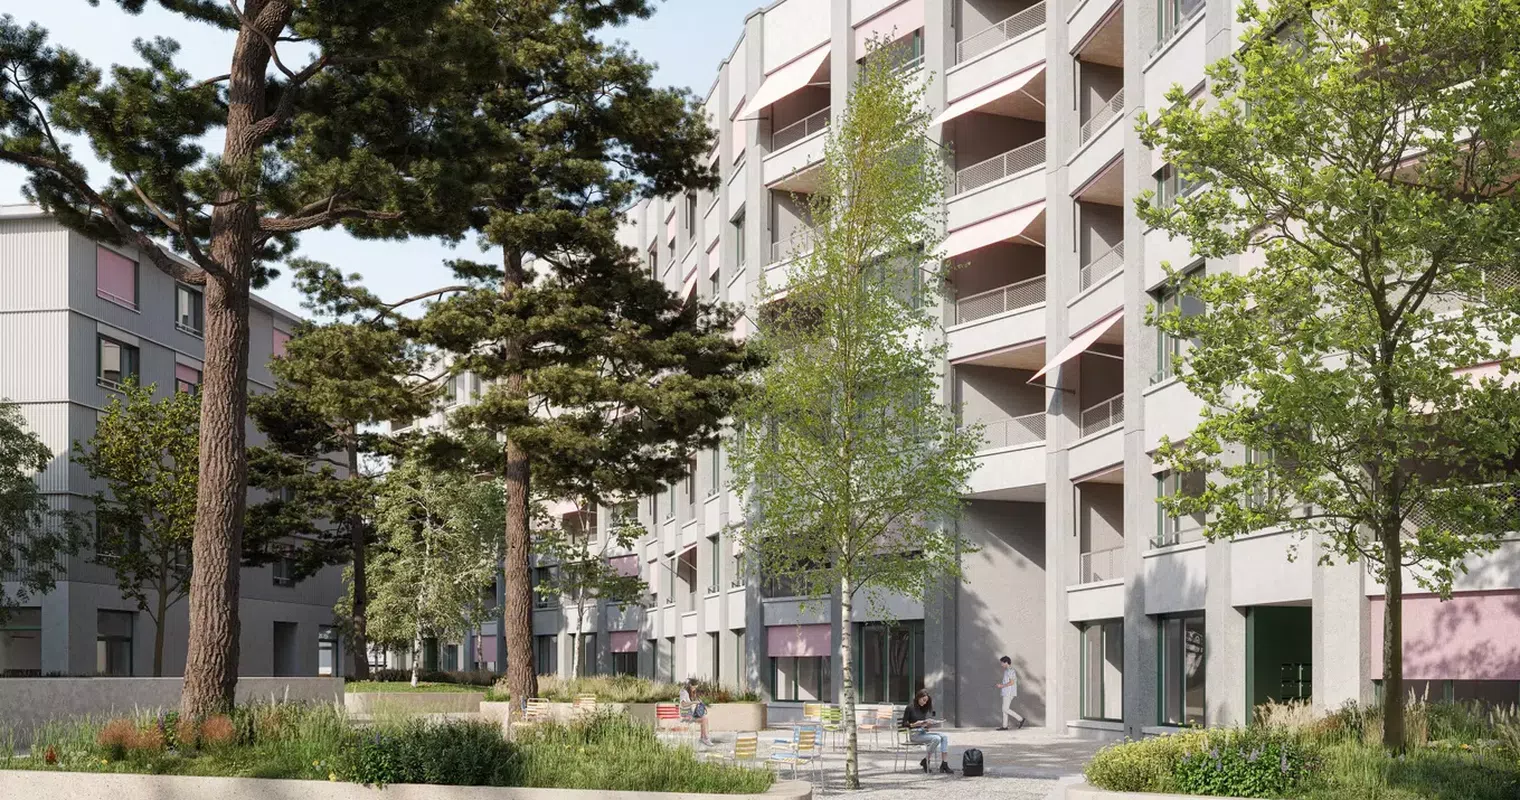 82 neue Wohnungen am Reusszopf in Luzern rücken näher